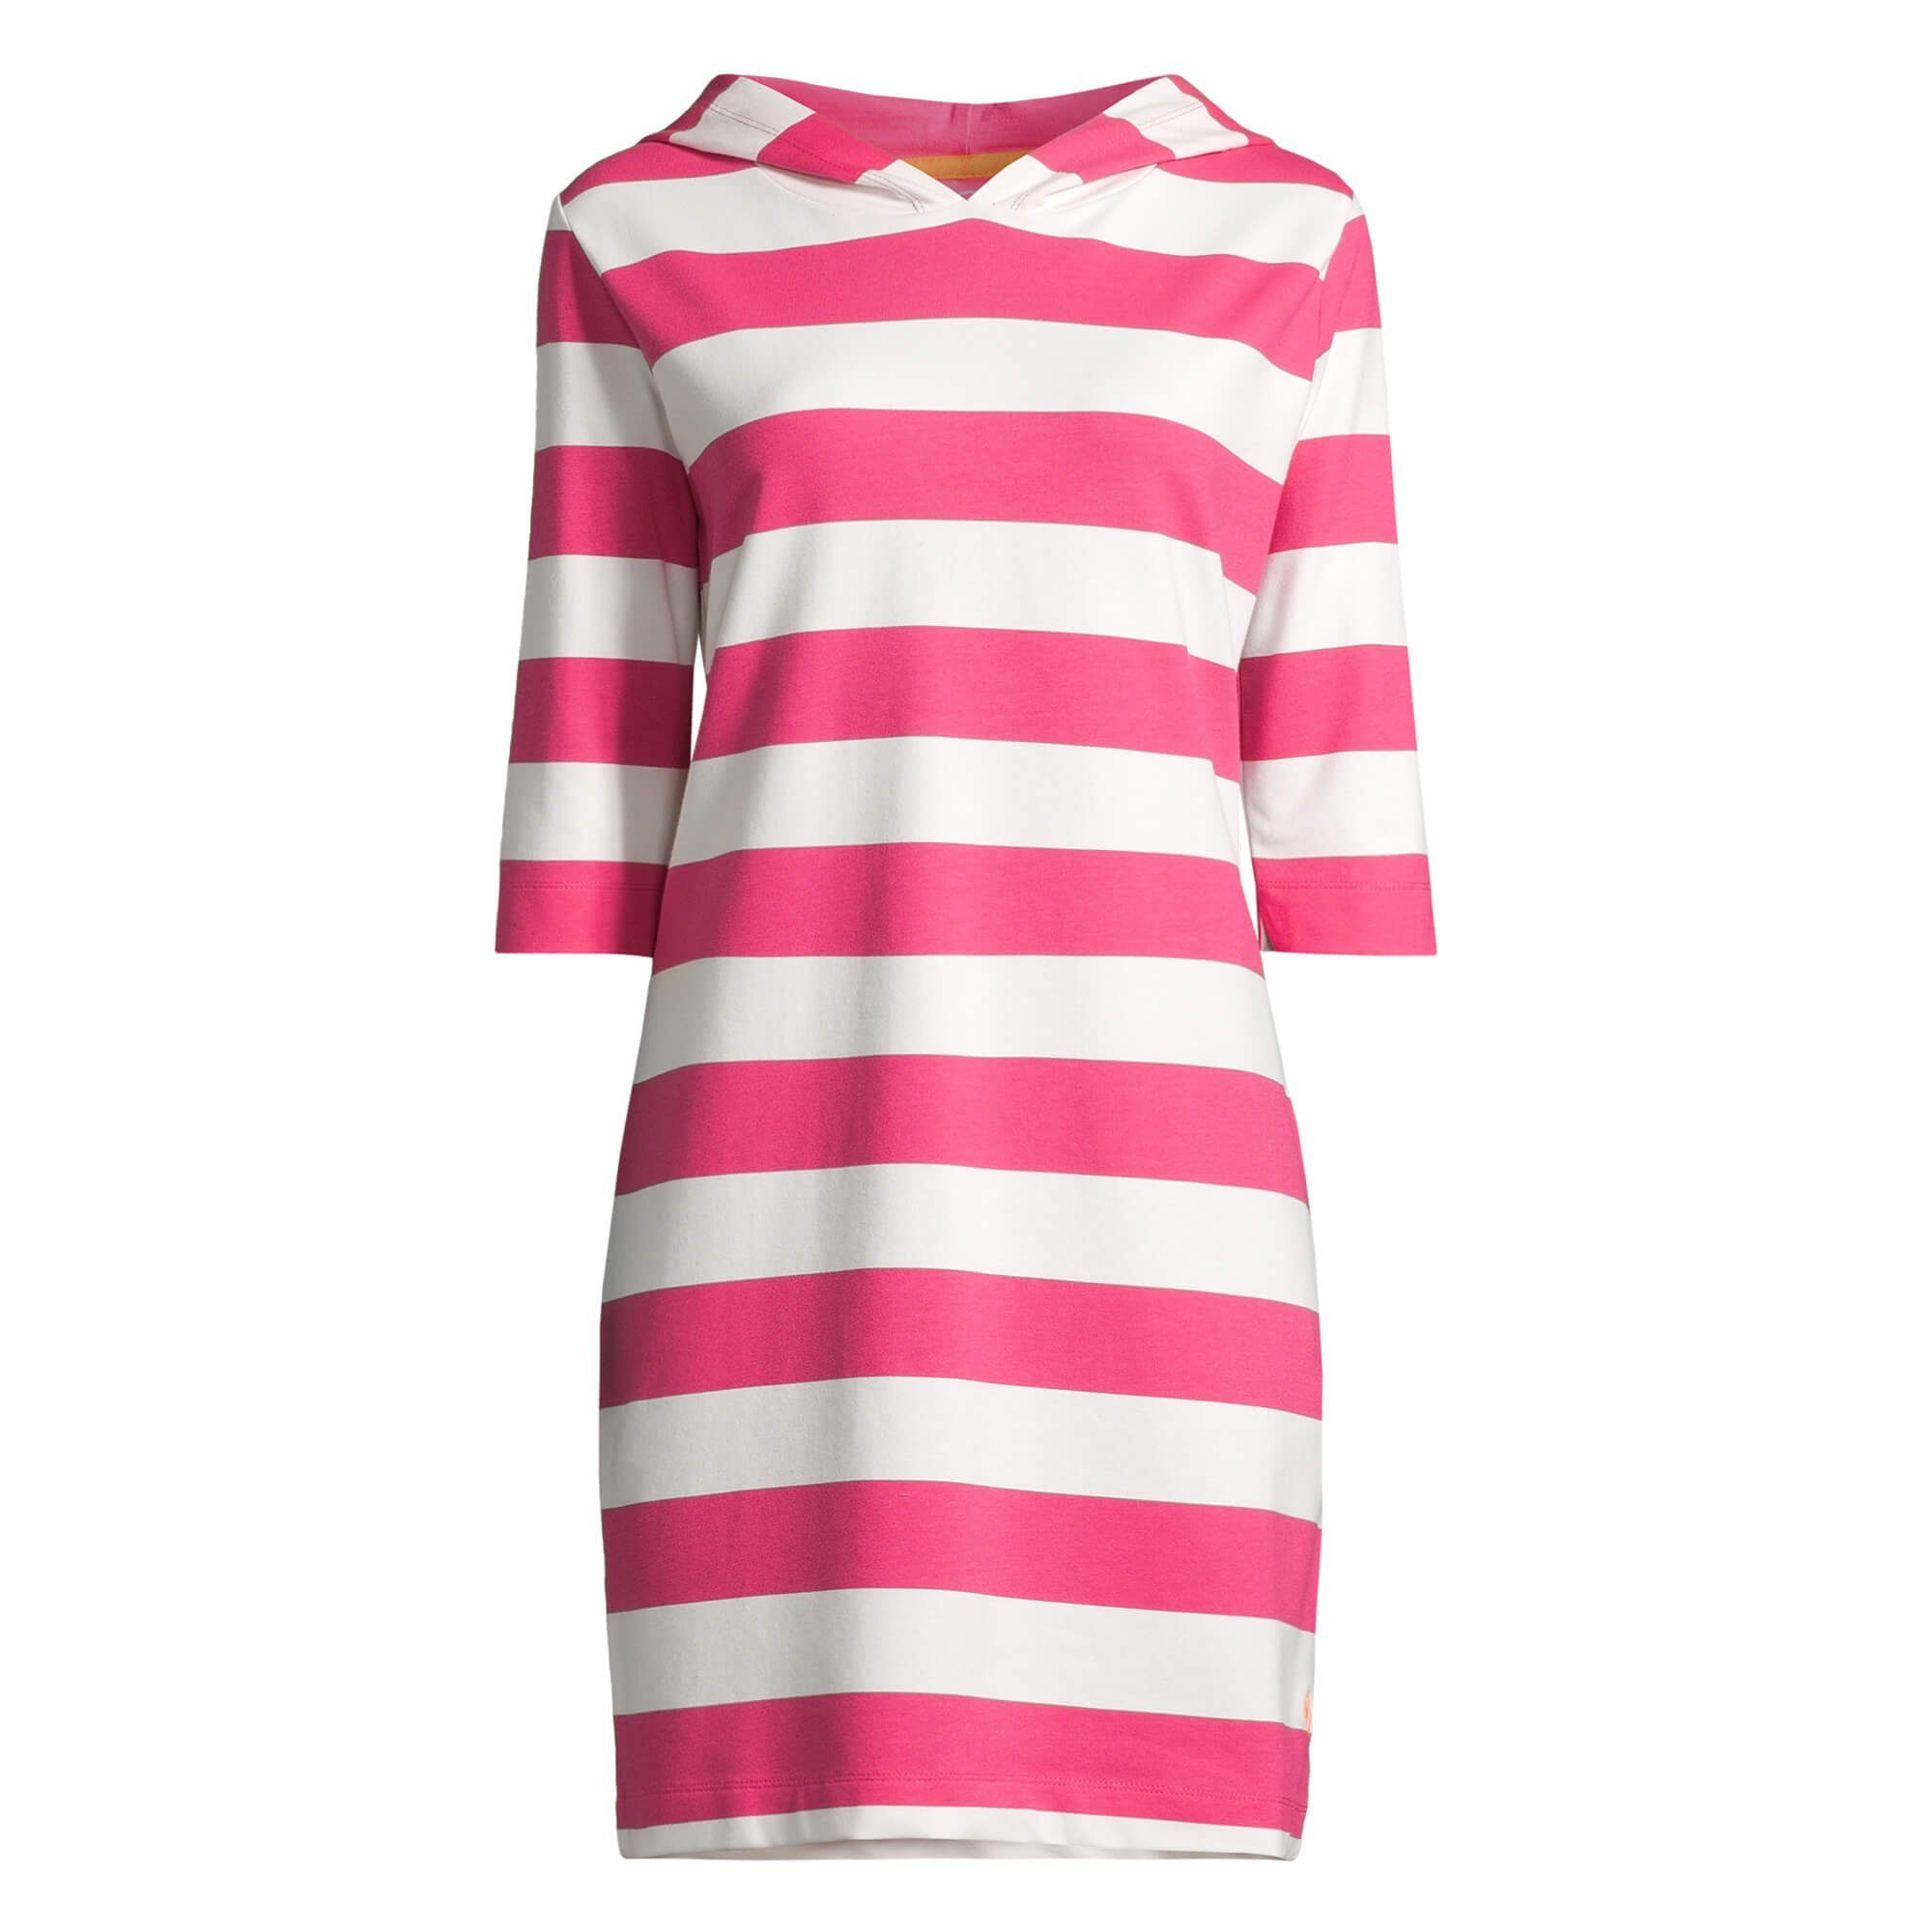 salzhaut Shirtkleid Damen Hoodie-Kleid Kapuzenkleid pink offwhite 3/4-Arm Block-Streifen Löövstick 